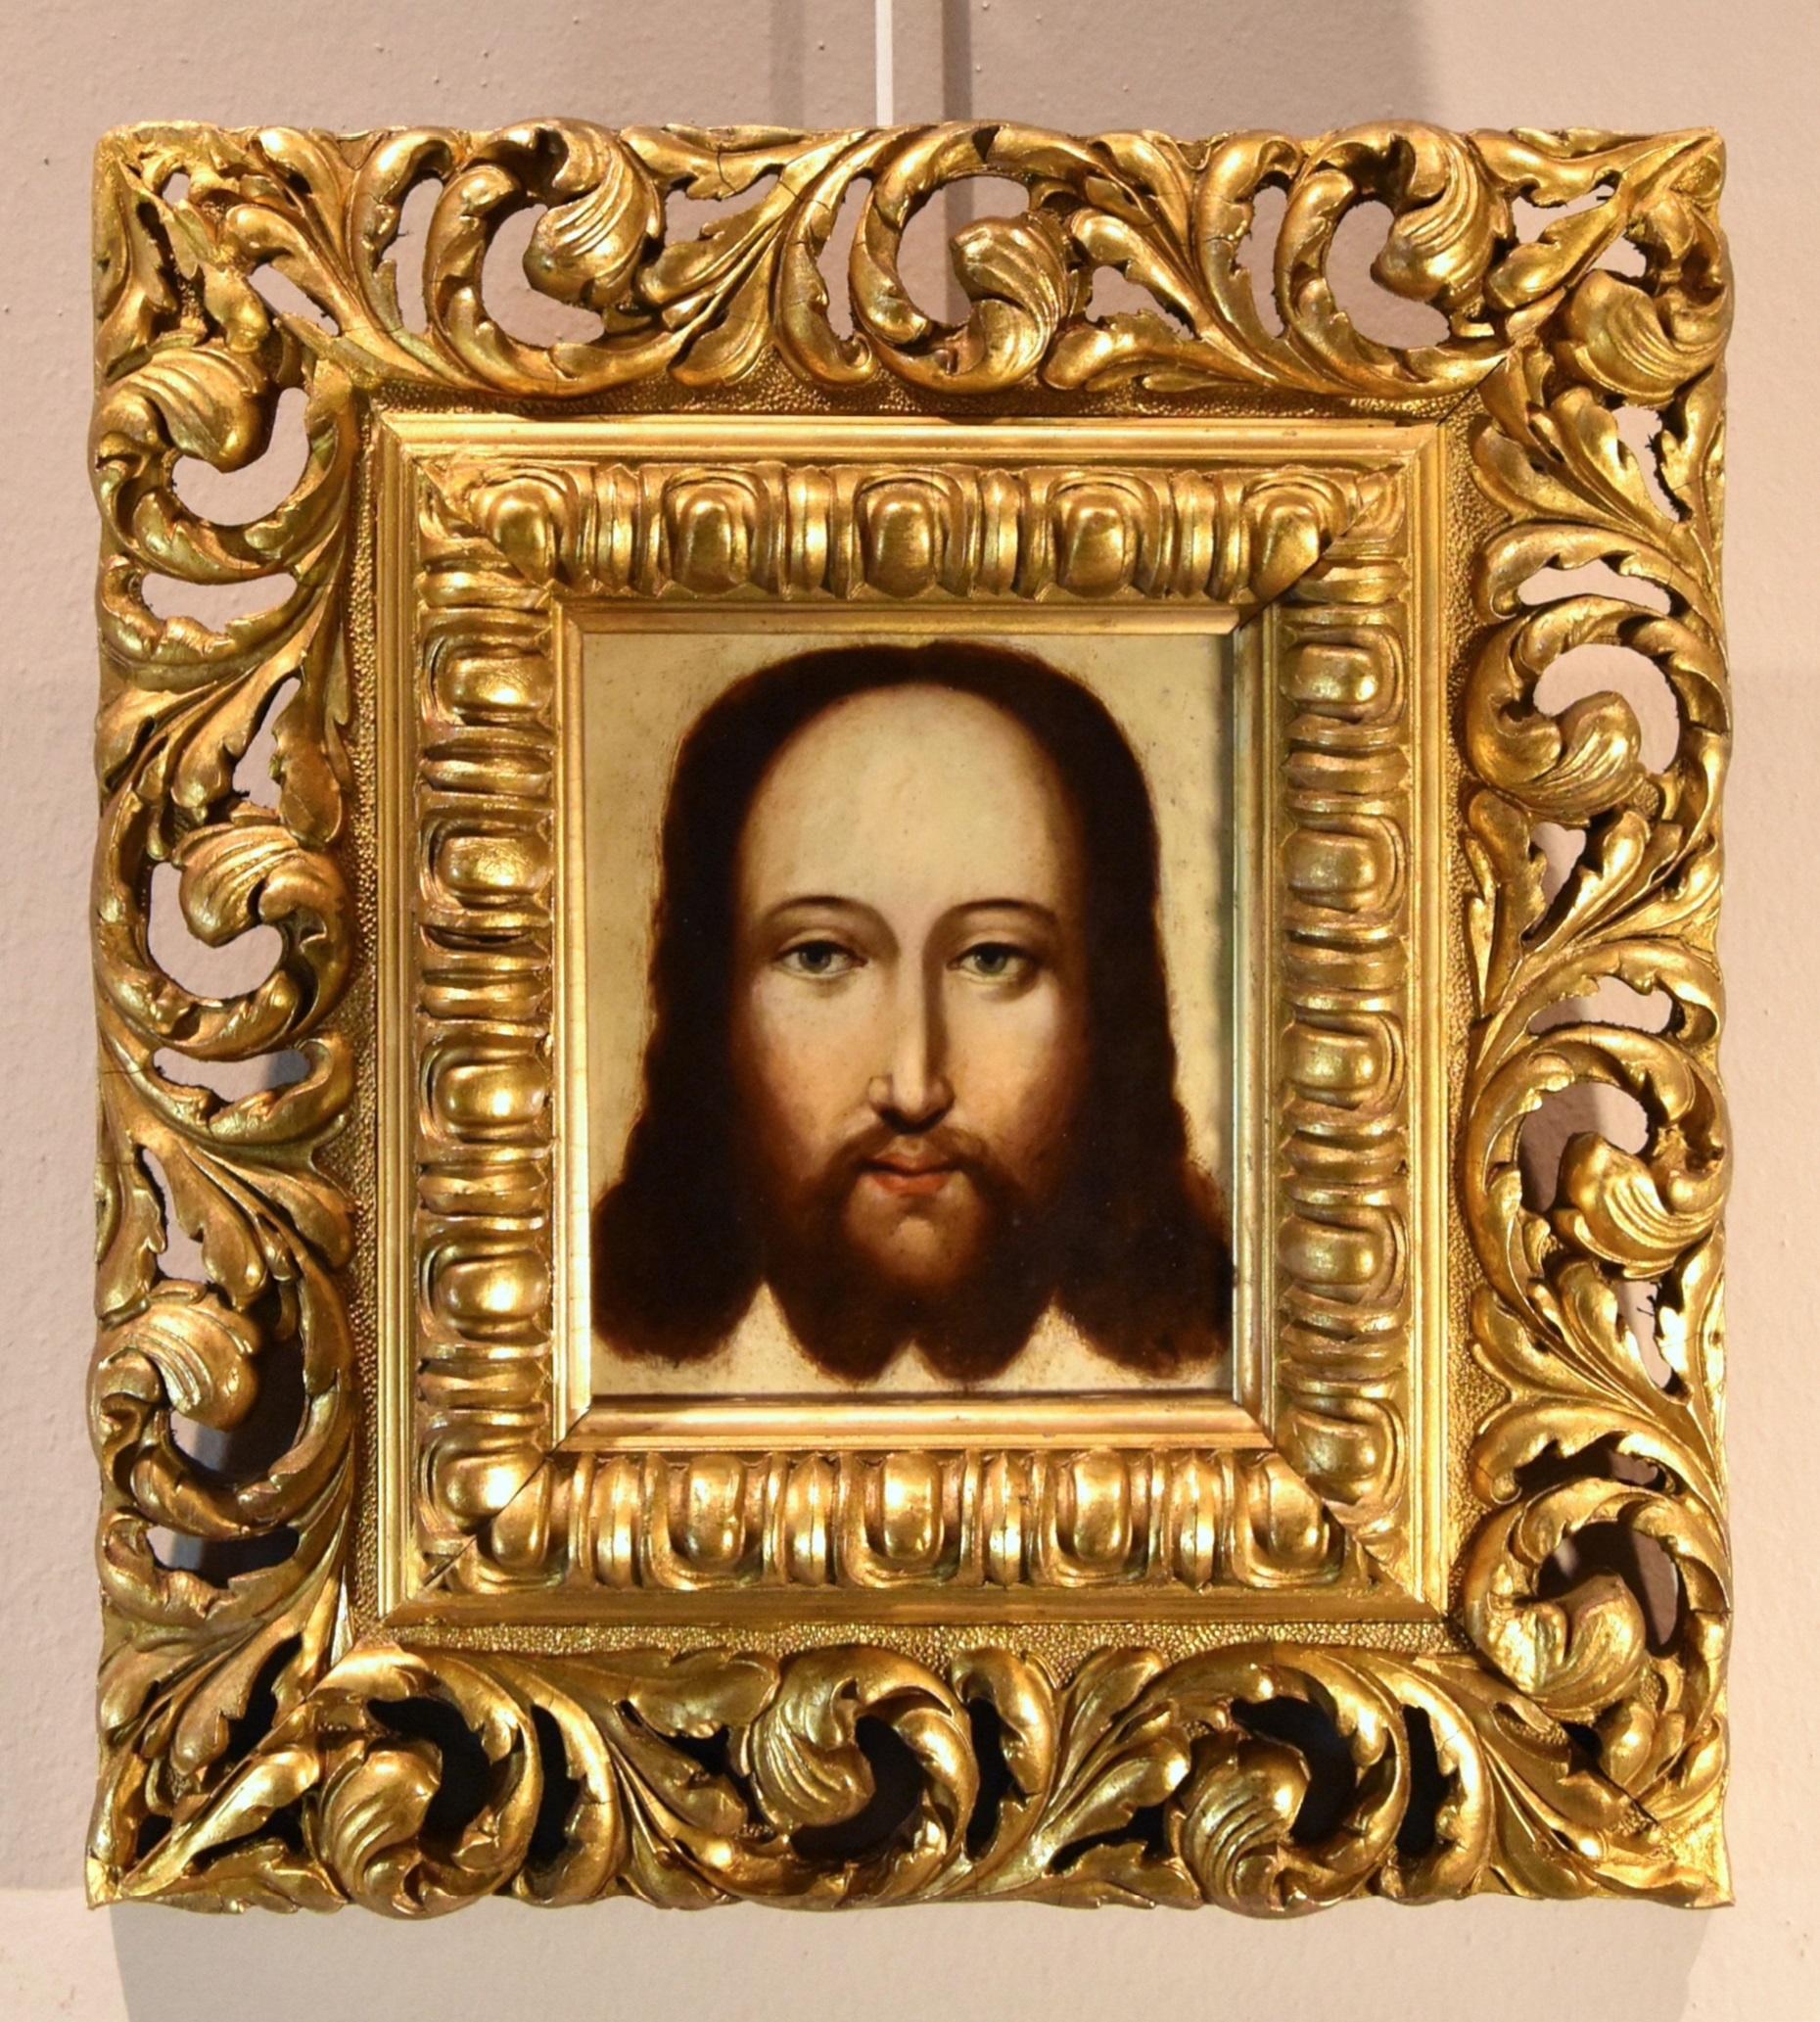 Christus Salvator Mundi Gemälde Öl auf Kupfer 16/17. Jahrhundert Flämische Schule   – Painting von Flemish Painter 16th-17th Century